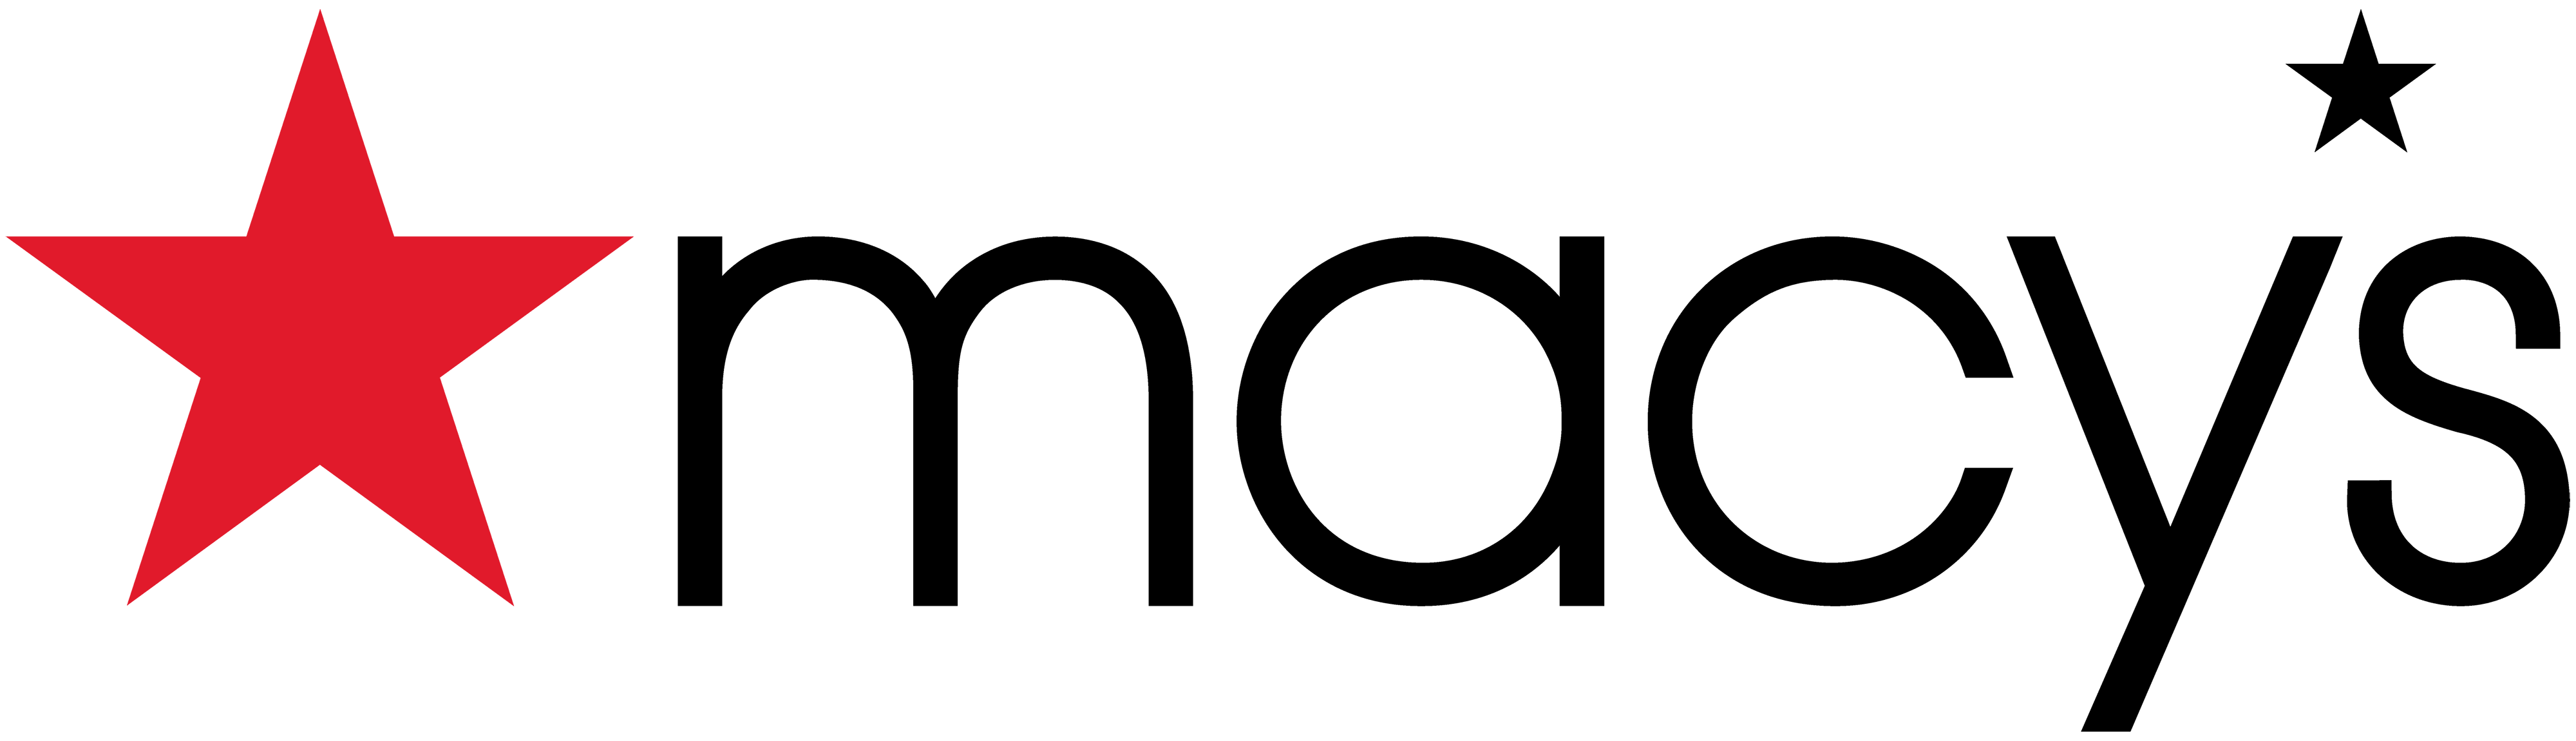 Macys Logo PNG Transparent